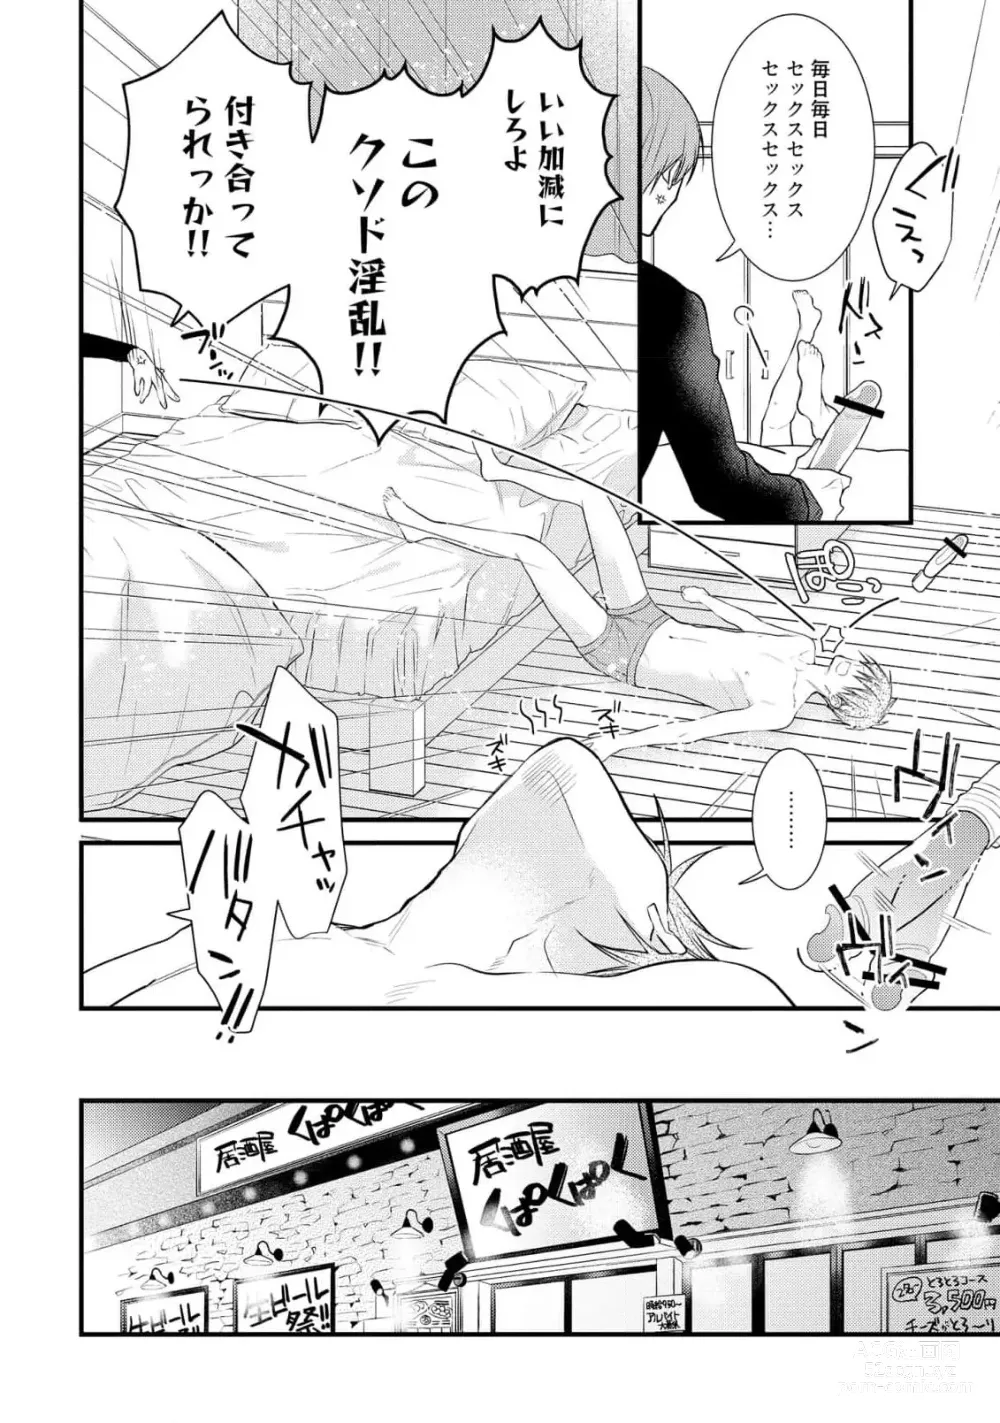 Page 6 of manga Ecchi wa shuu 7 Kibou Desu!